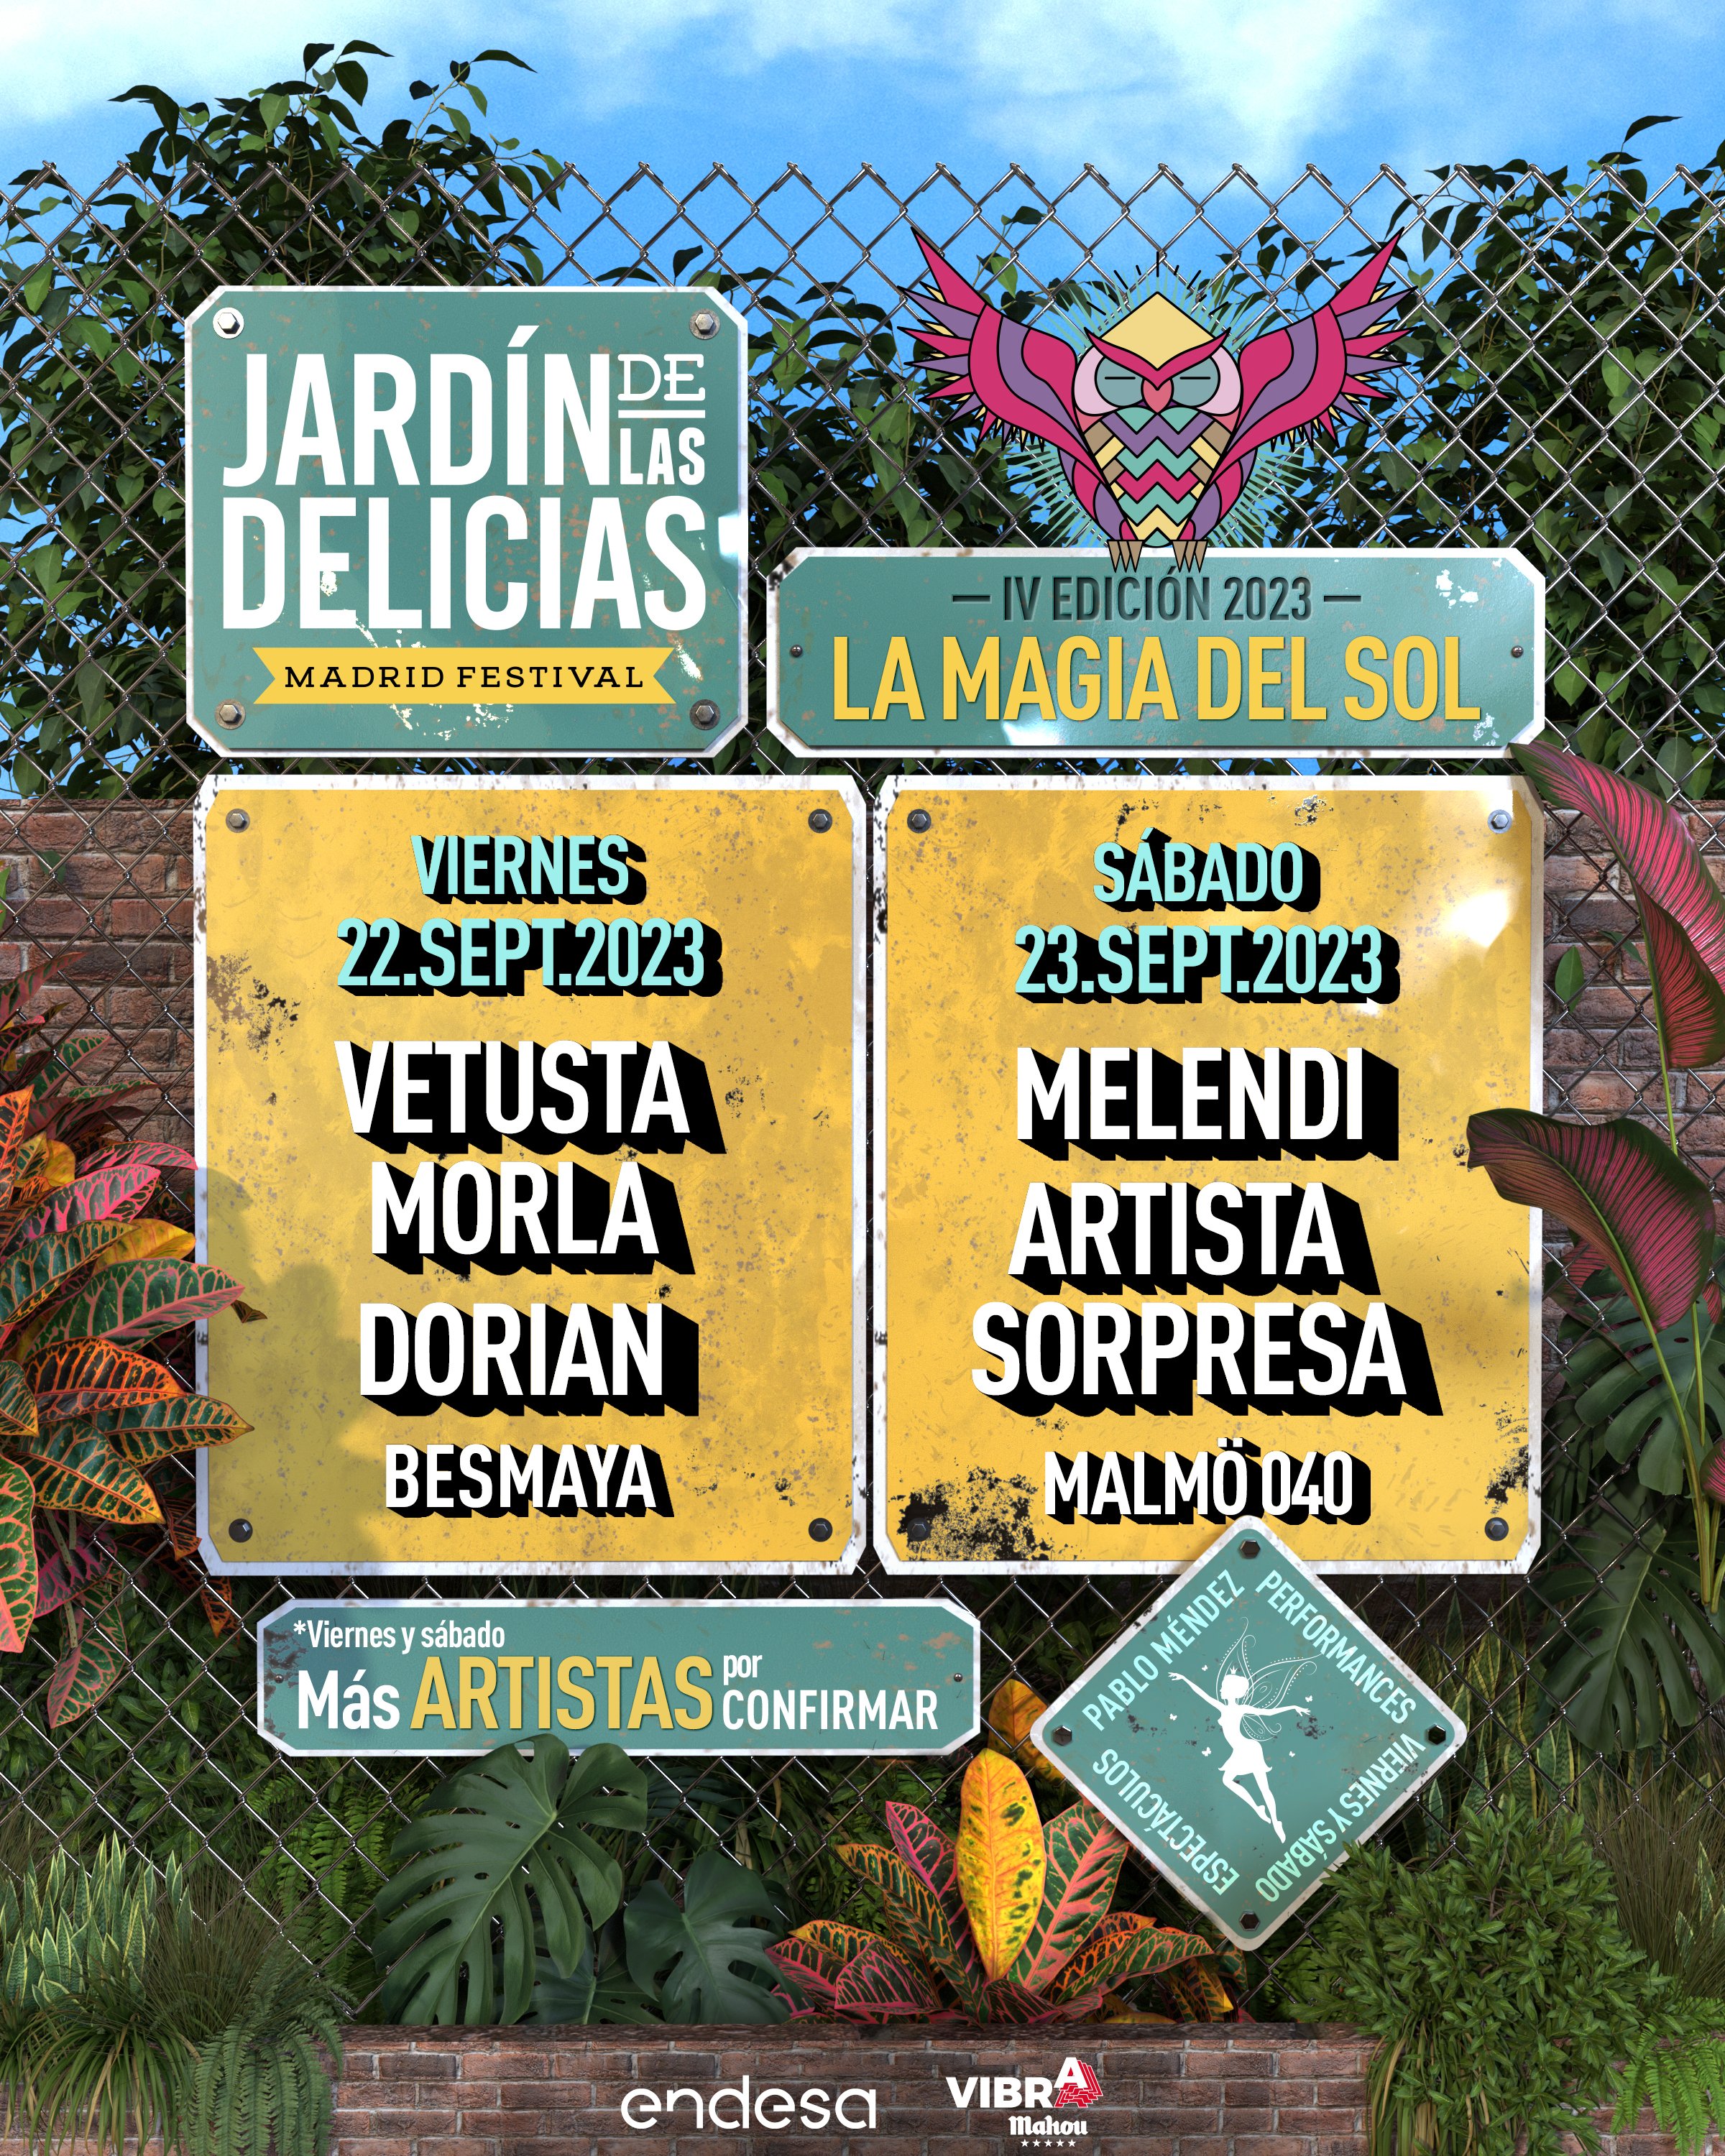 Jardín De Las Delicias Festival (@jardindeliciasf) / Twitter